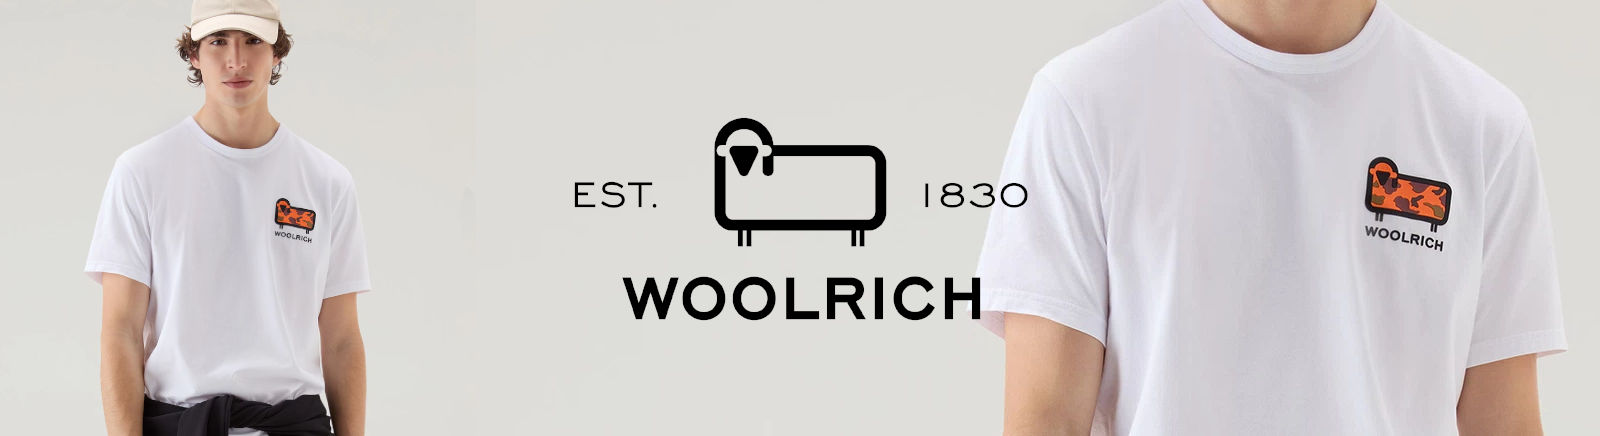 Woolrich Markenschuhe online bestellen im Juppen Schuhe Shop